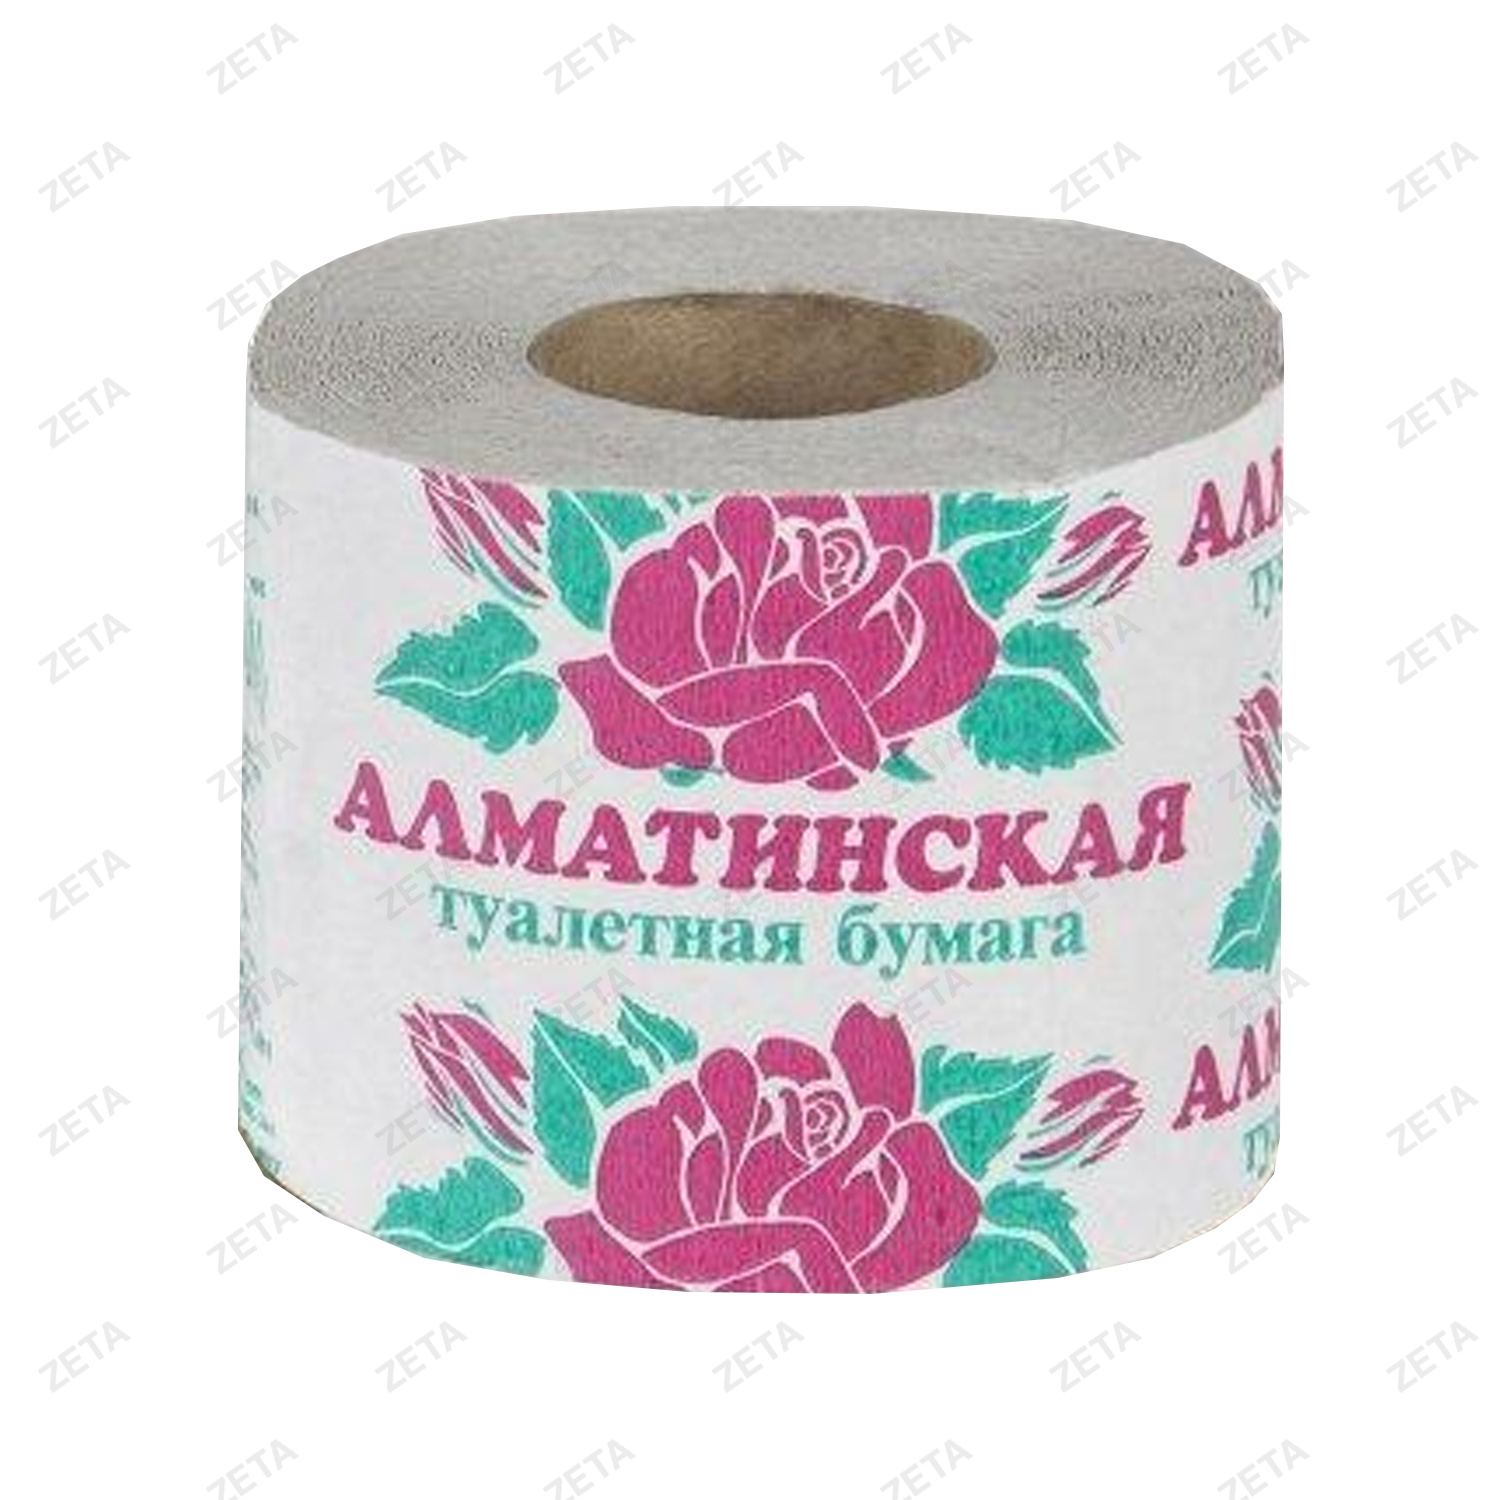 Туалетная бумага "Алматинская" (1 рулон)